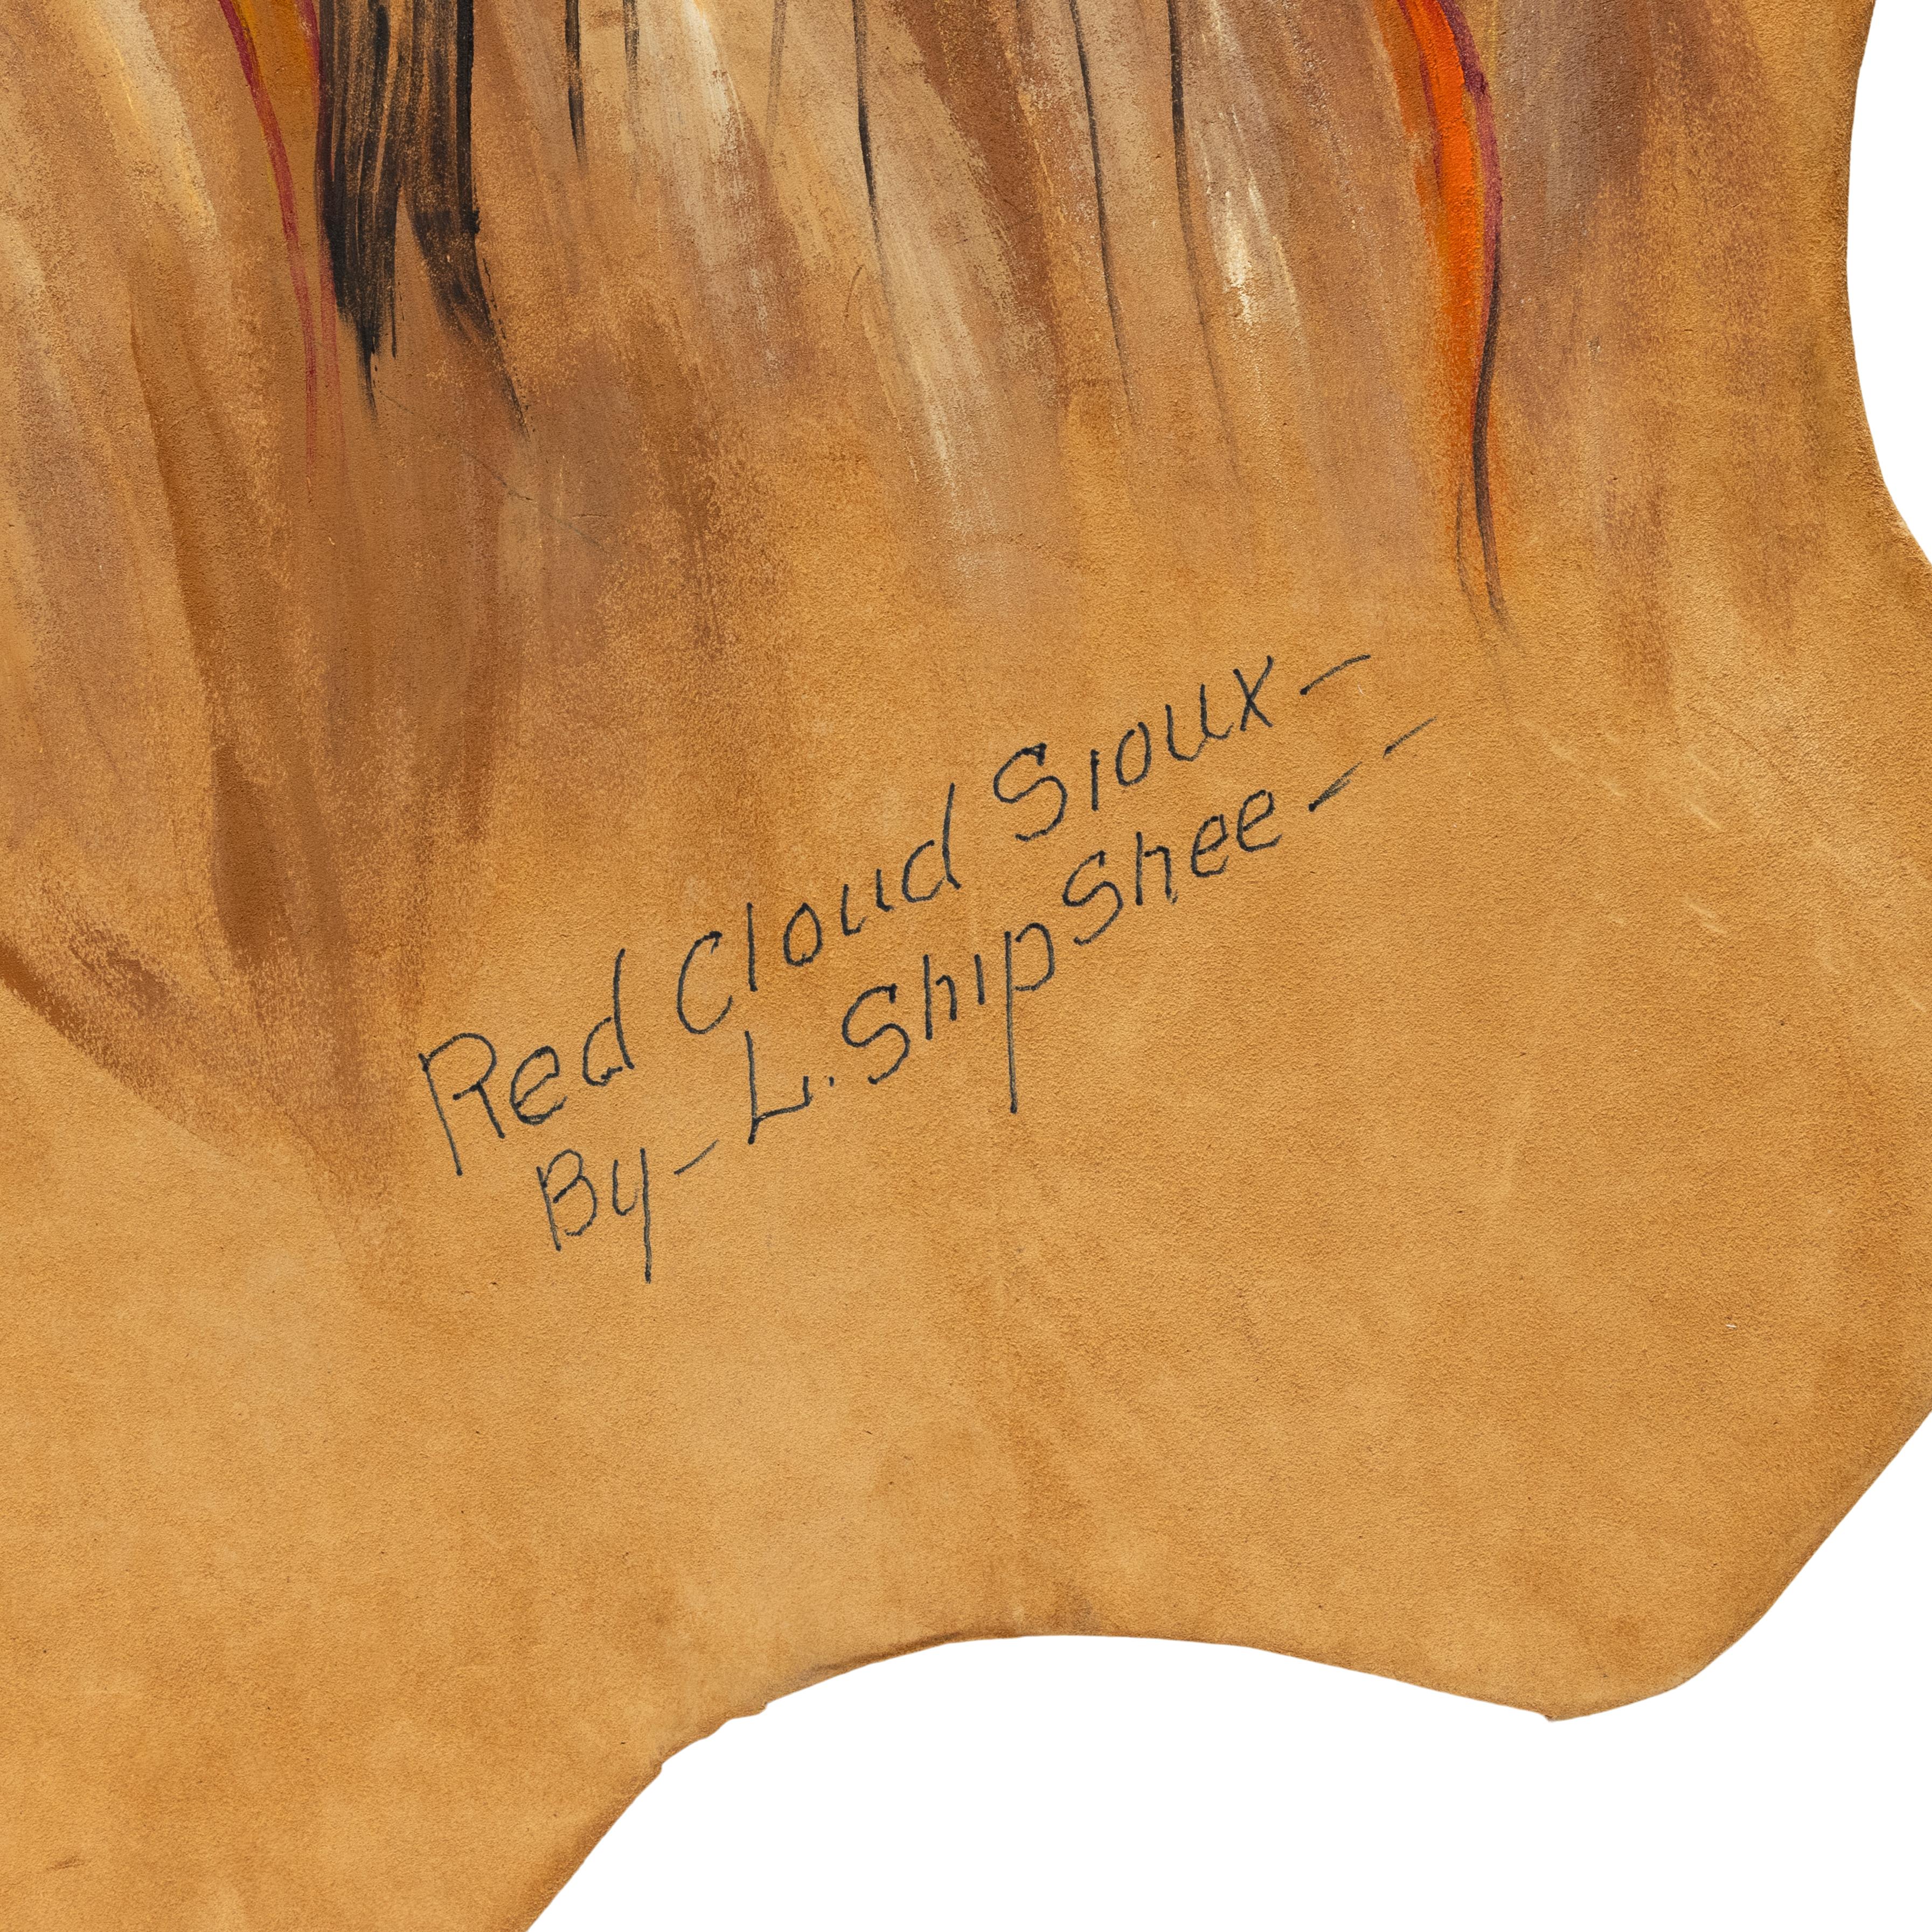 (1896-1975) Porträtgemälde des Häuptlings Red Cloud Sioux von Louis Shipshee auf Leder auf Karton montiert. Sehr schönes Gemälde von einem großen Künstler. 

Zeitraum: Mitte des 20. Jahrhunderts

Herkunft: Vereinigte Staaten

Größe: 44